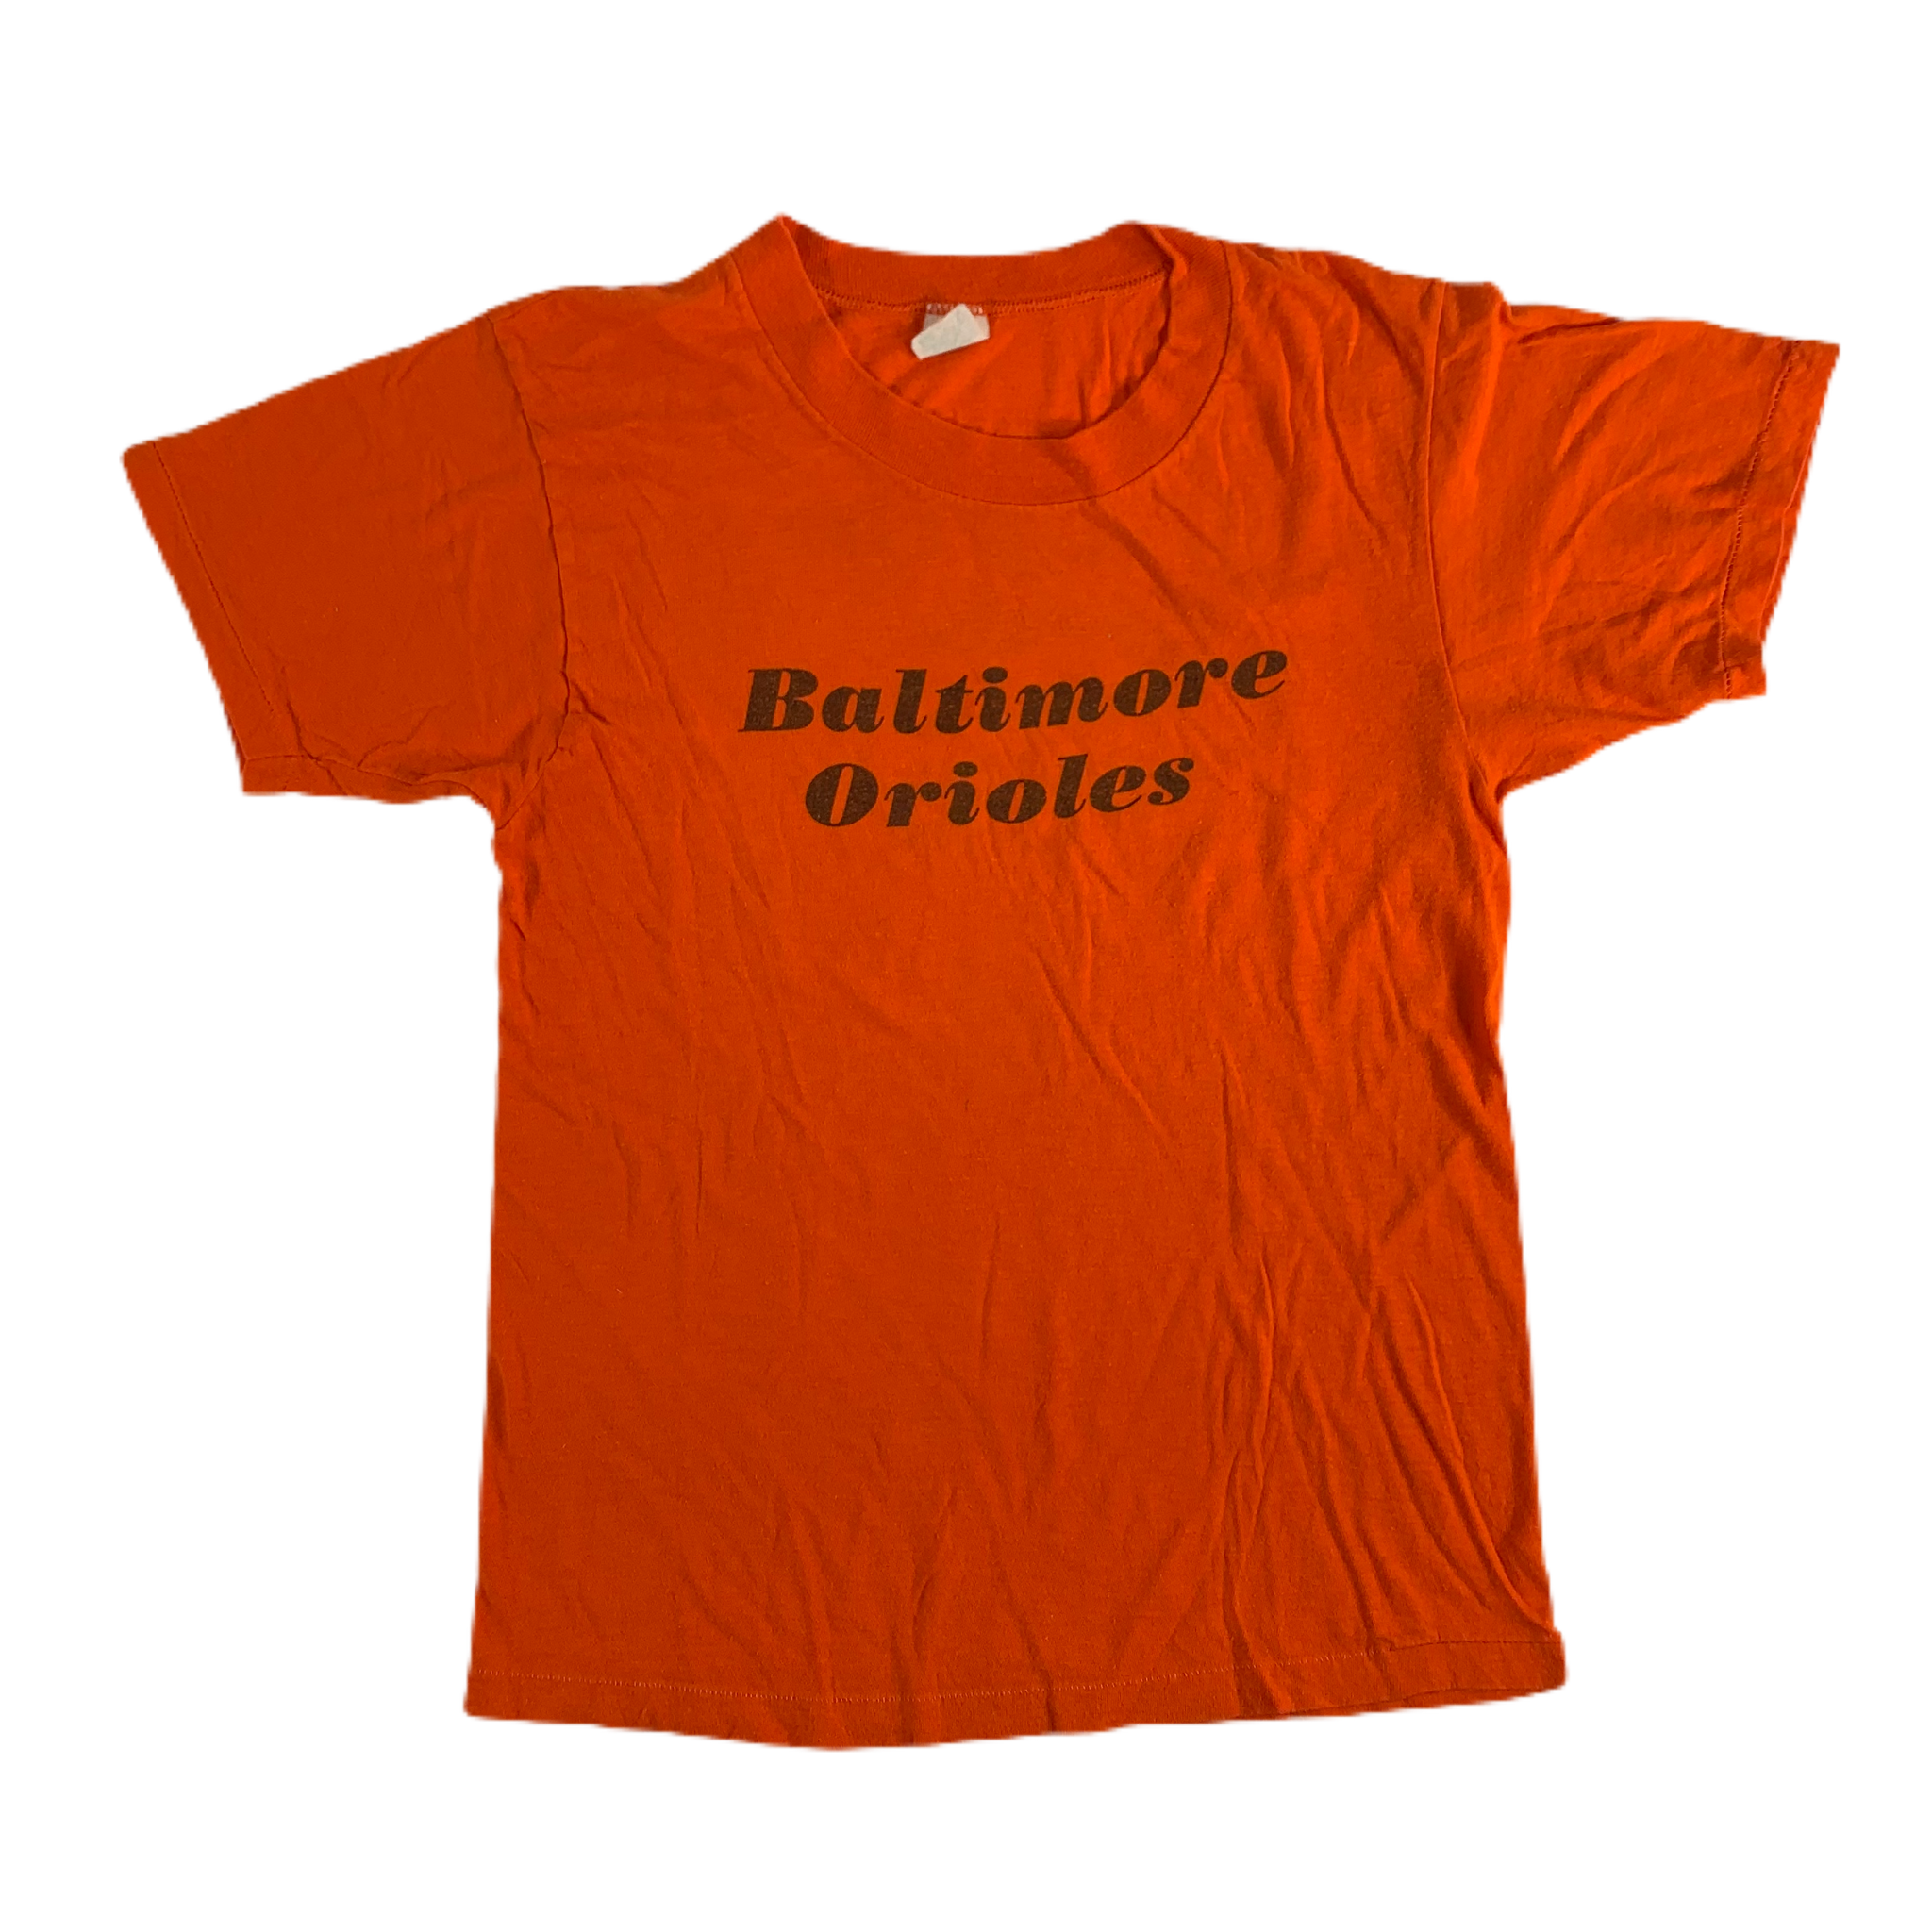 Jim Palmer Baltimore Orioles Orange Throwback Jersey